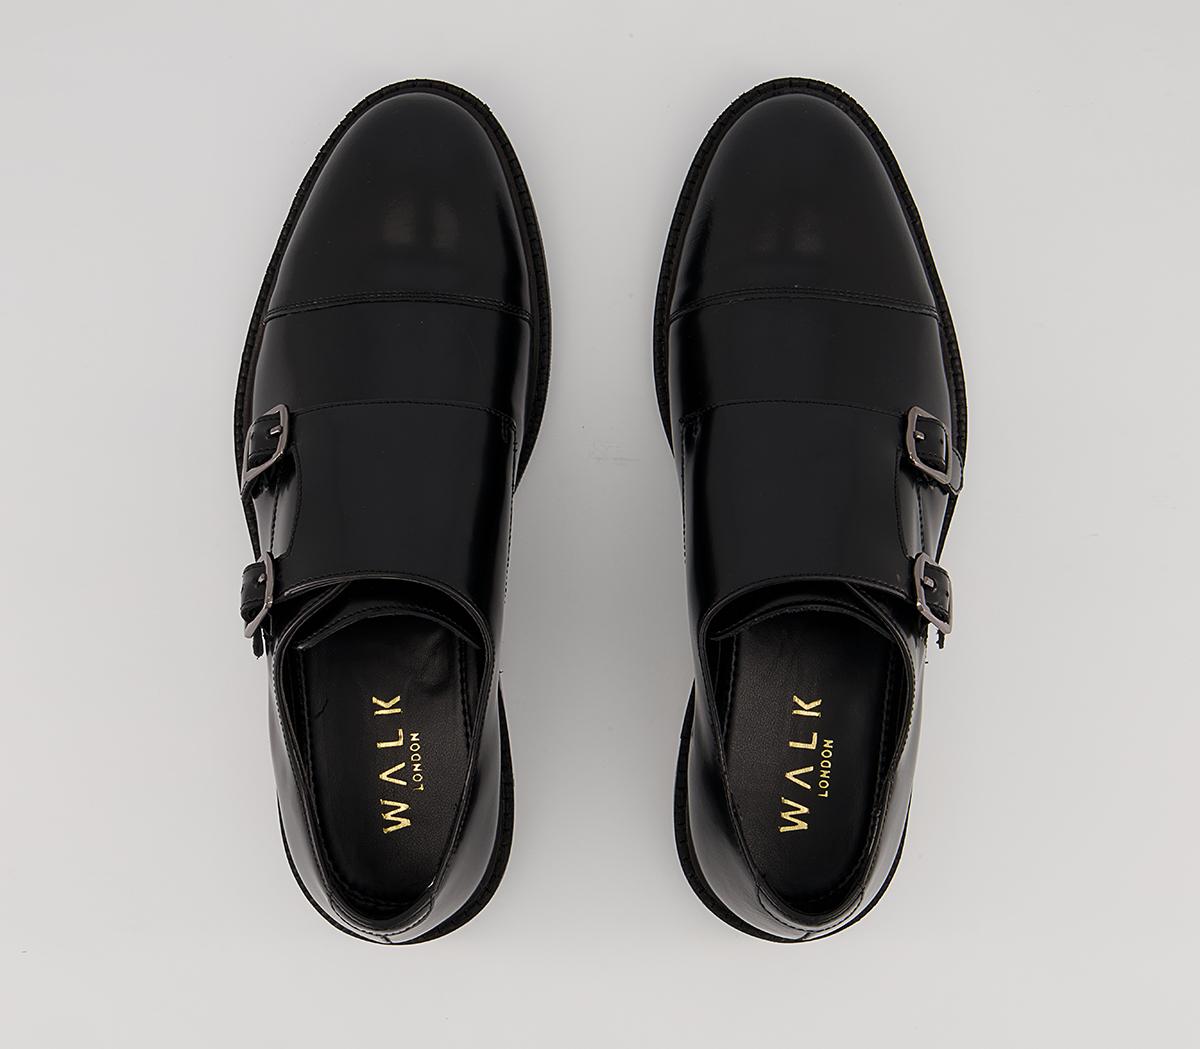 Walk London Oliver Monk Shoes Black - Men's Casual Shoes